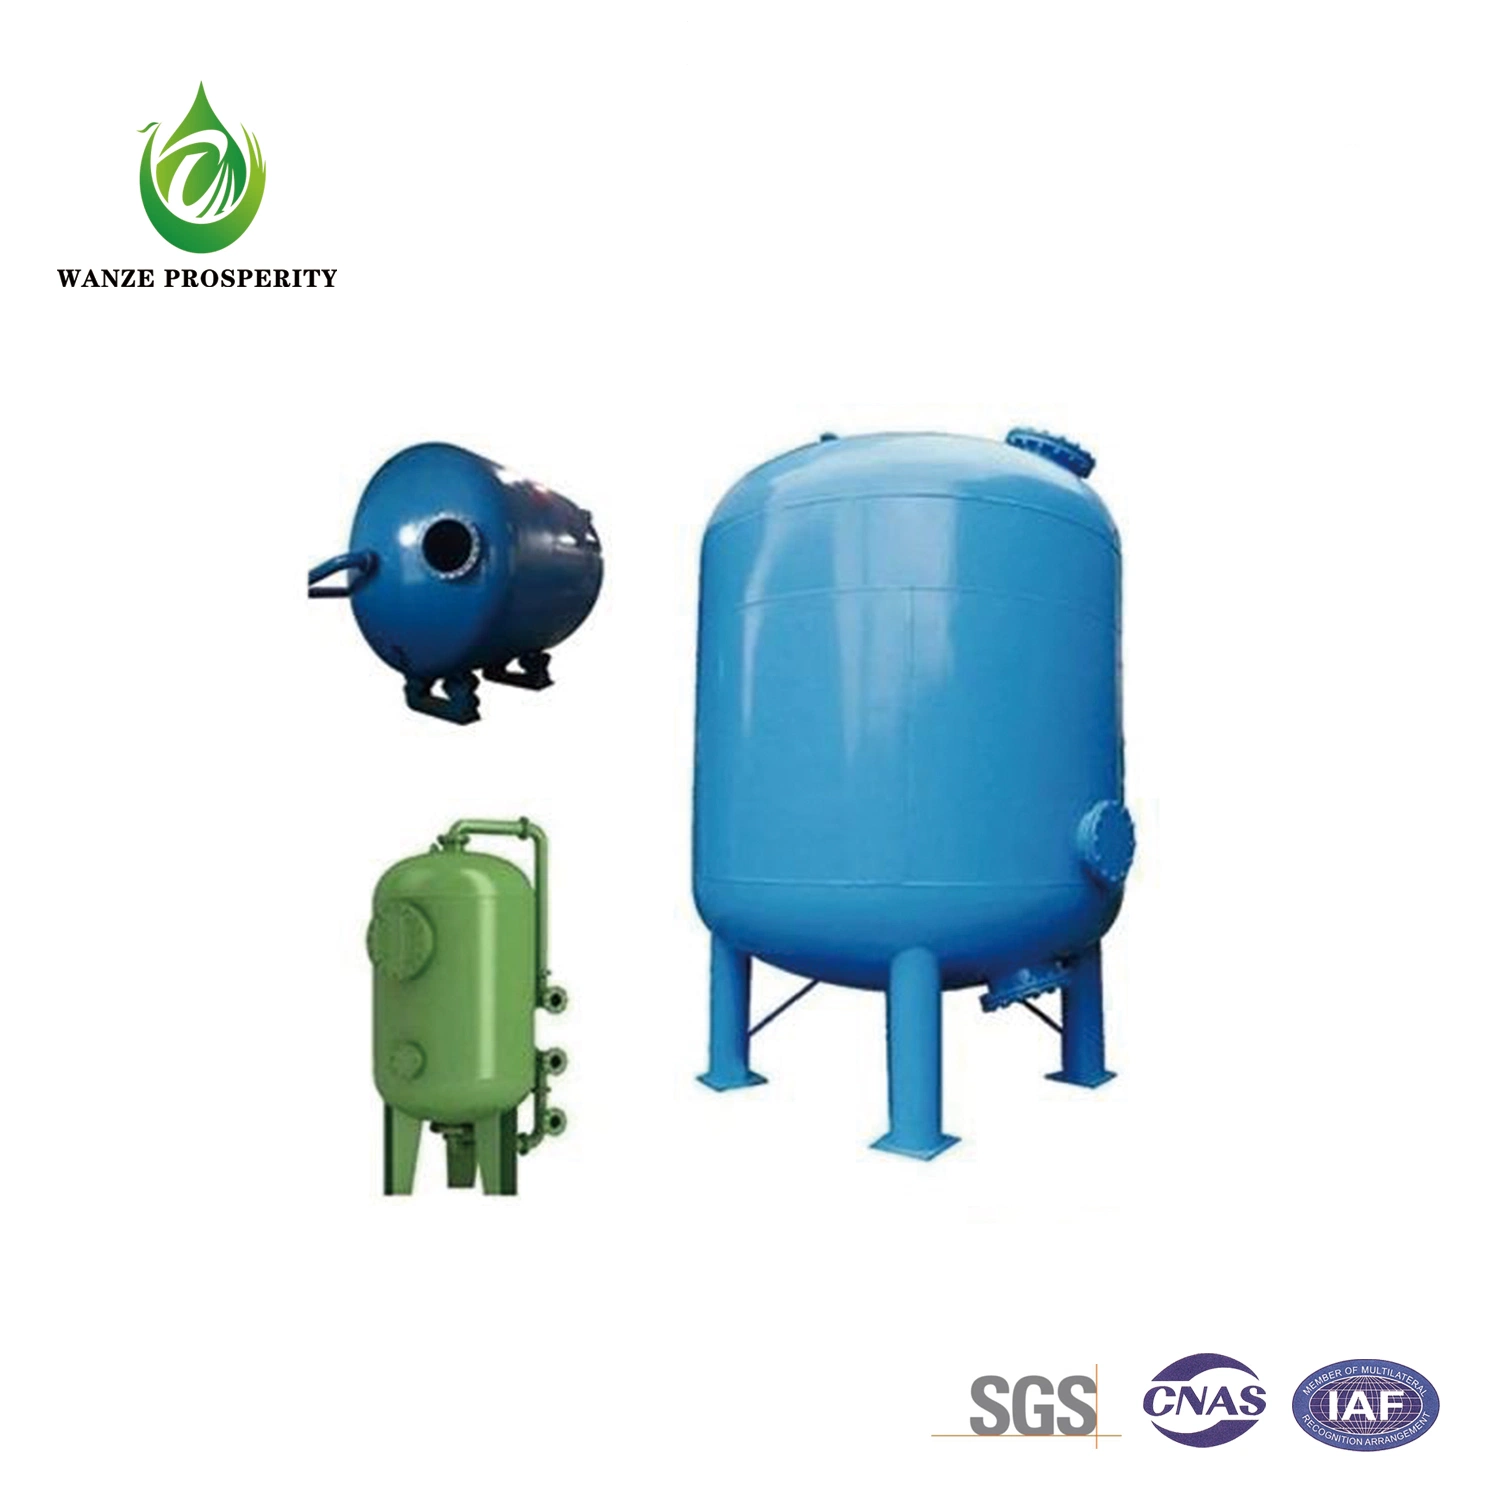 Усовершенствованная система фильтрации оборудование для очистки сточных вод из соевых бобов перерабатывающие предприятия